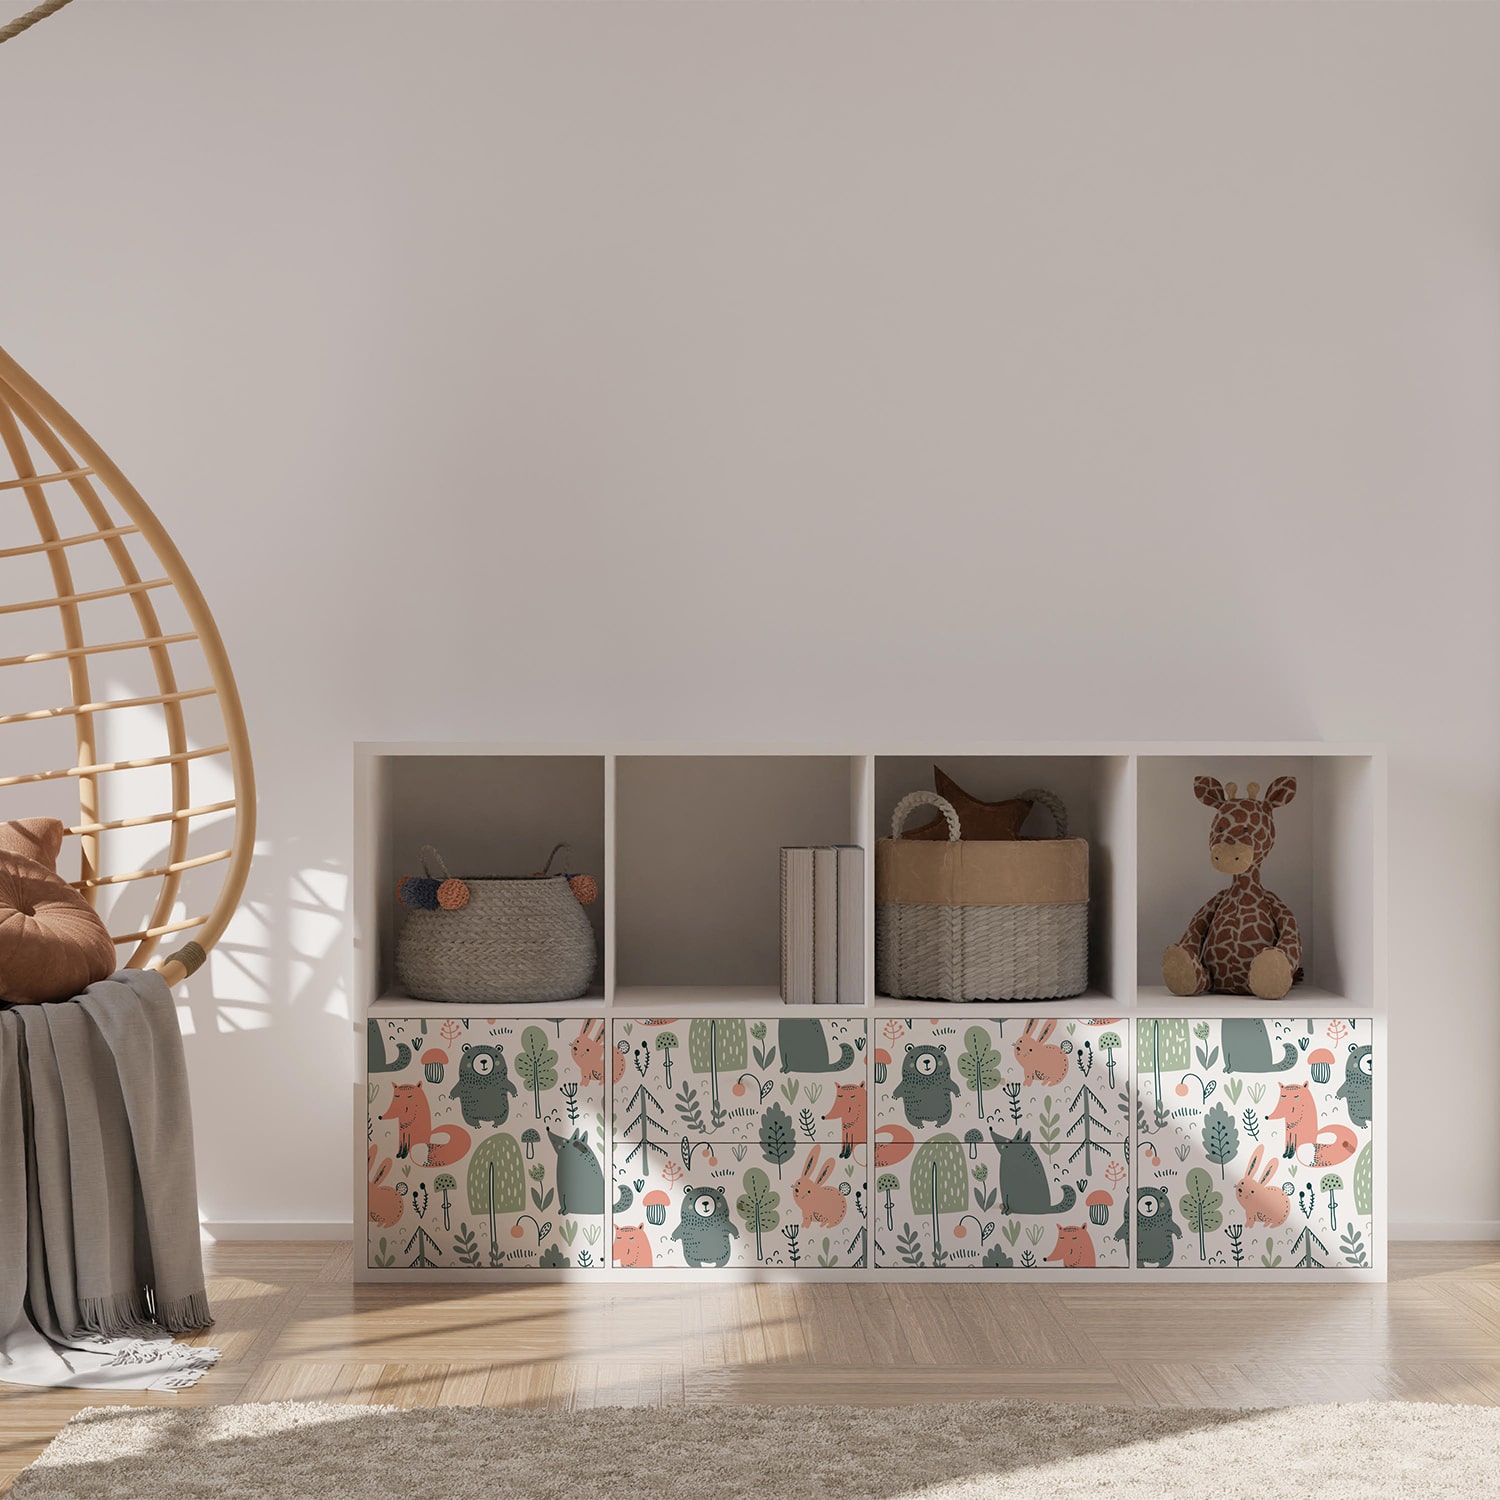 PP88-meuble-papier-peint-adhesif-decoratif-revetement-vinyle-motifs-animaux-de-la-forêt-renovation-meuble-mur-min